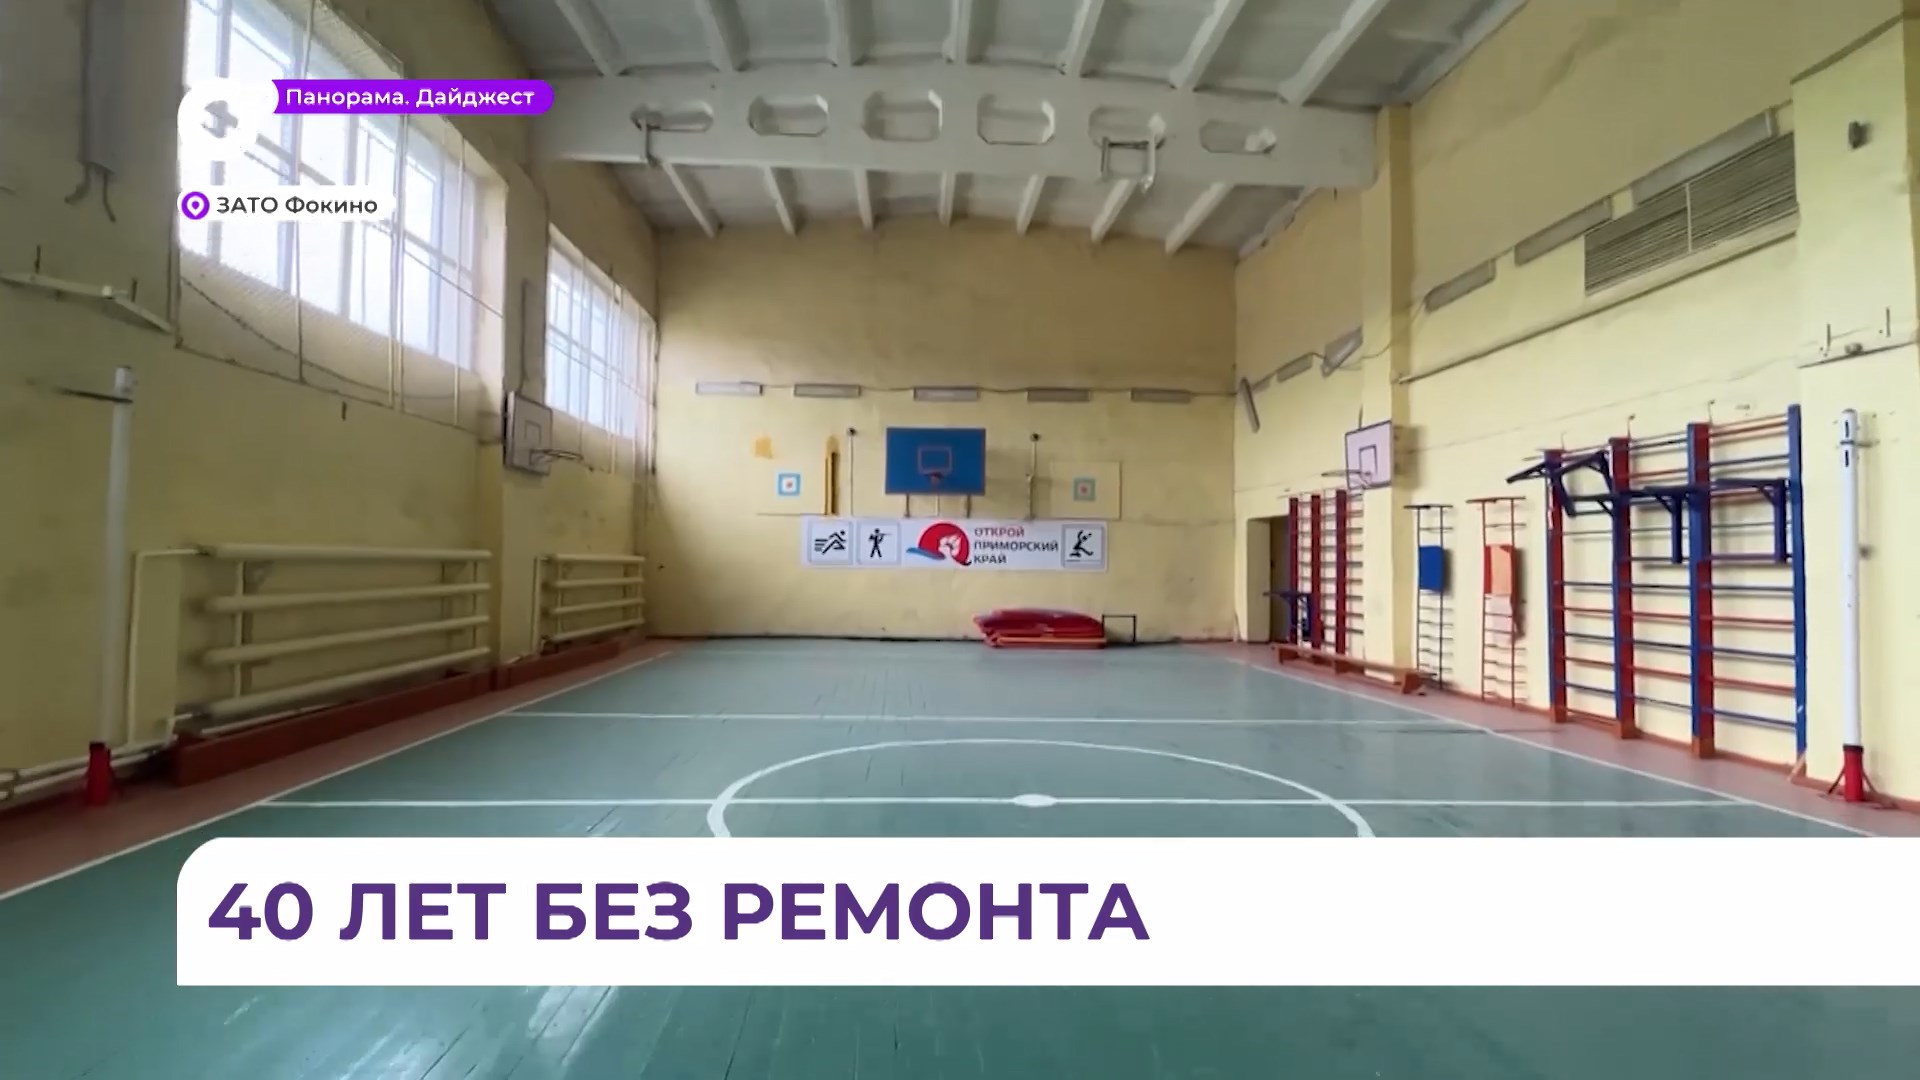 Спортивные залы двух школ в Фокино заиграют новыми красками